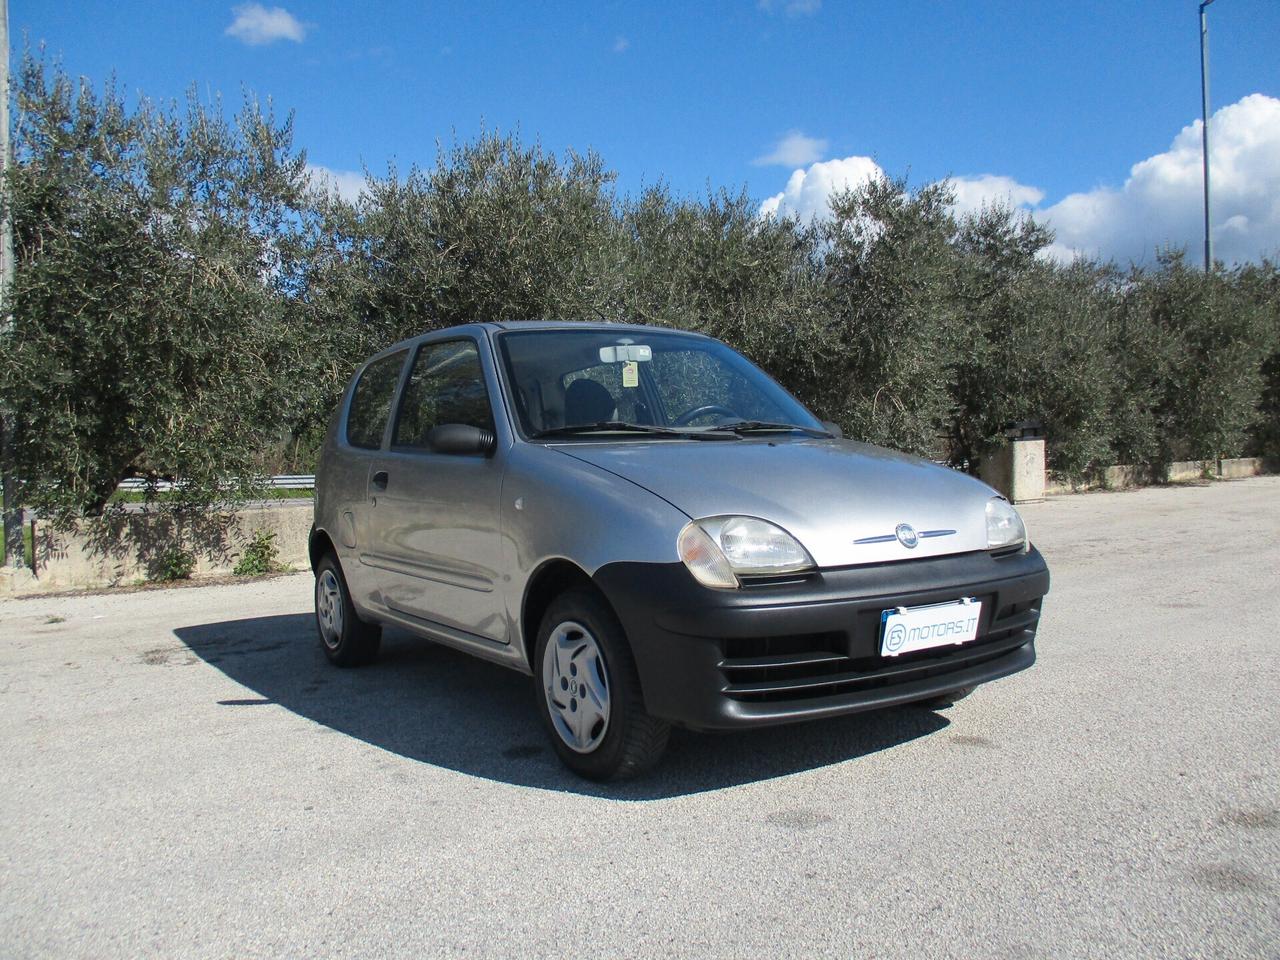 Fiat 600 1.1